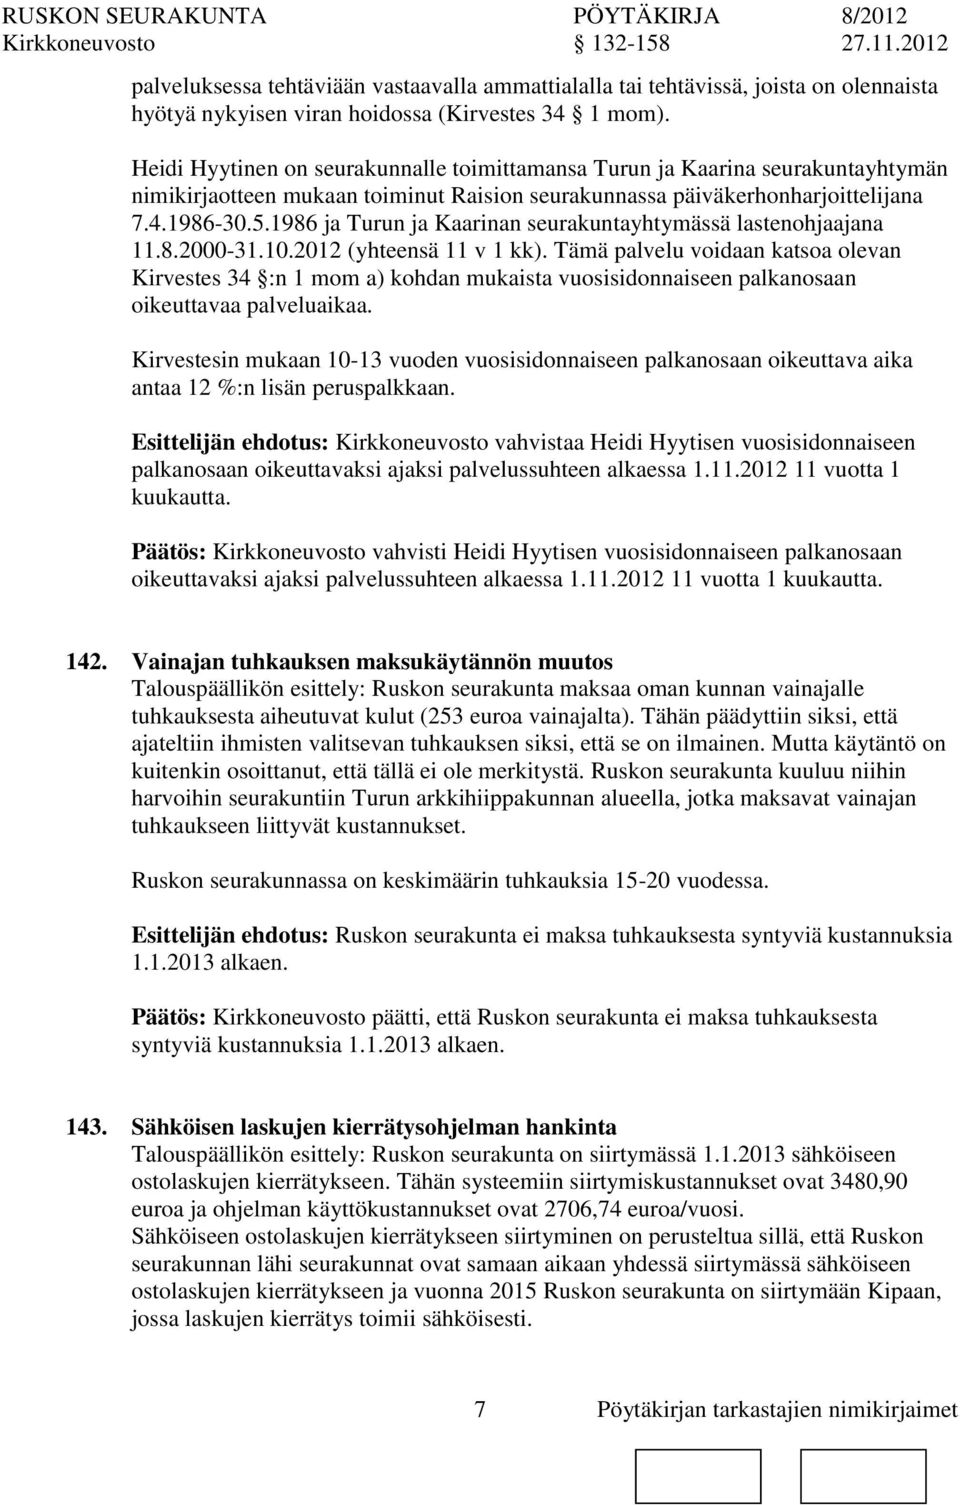 1986 ja Turun ja Kaarinan seurakuntayhtymässä lastenohjaajana 11.8.2000-31.10.2012 (yhteensä 11 v 1 kk).